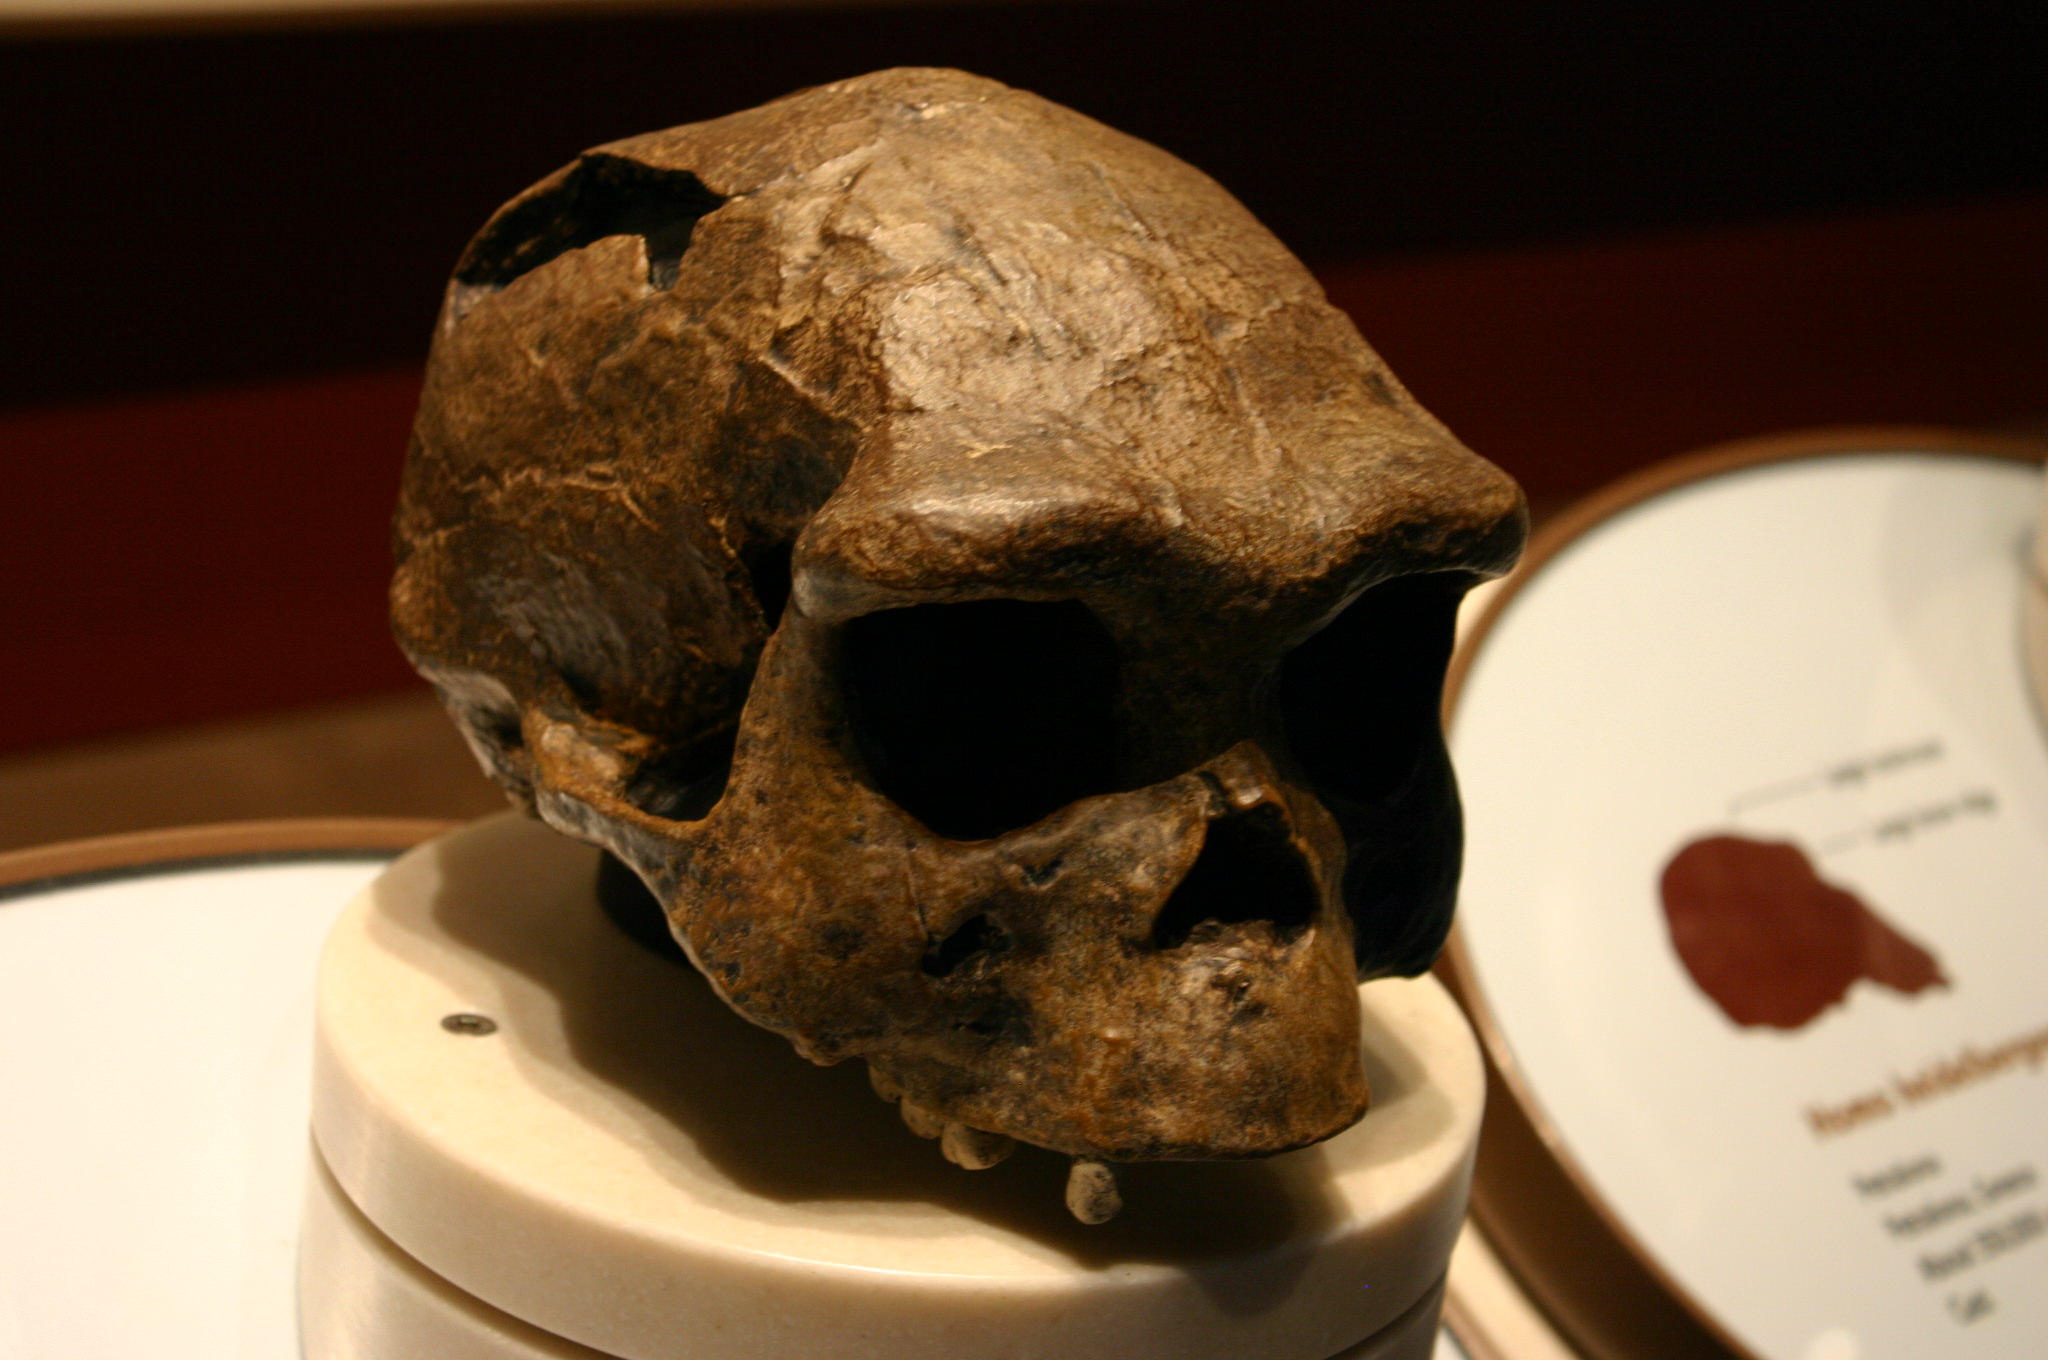 Das Skelett aus der Höhle Sima de los Huesos wurde einer frühen menschlichen Spezies namens Homo heidelbergensis zugeordnet. Forscher sagen jedoch, dass die Skelettstruktur der von Neandertalern ähnlich ist – so sehr, dass einige sagen, dass die Sima de los Huesos eher Neandertaler als Vertreter des Homo heidelbergensis waren.